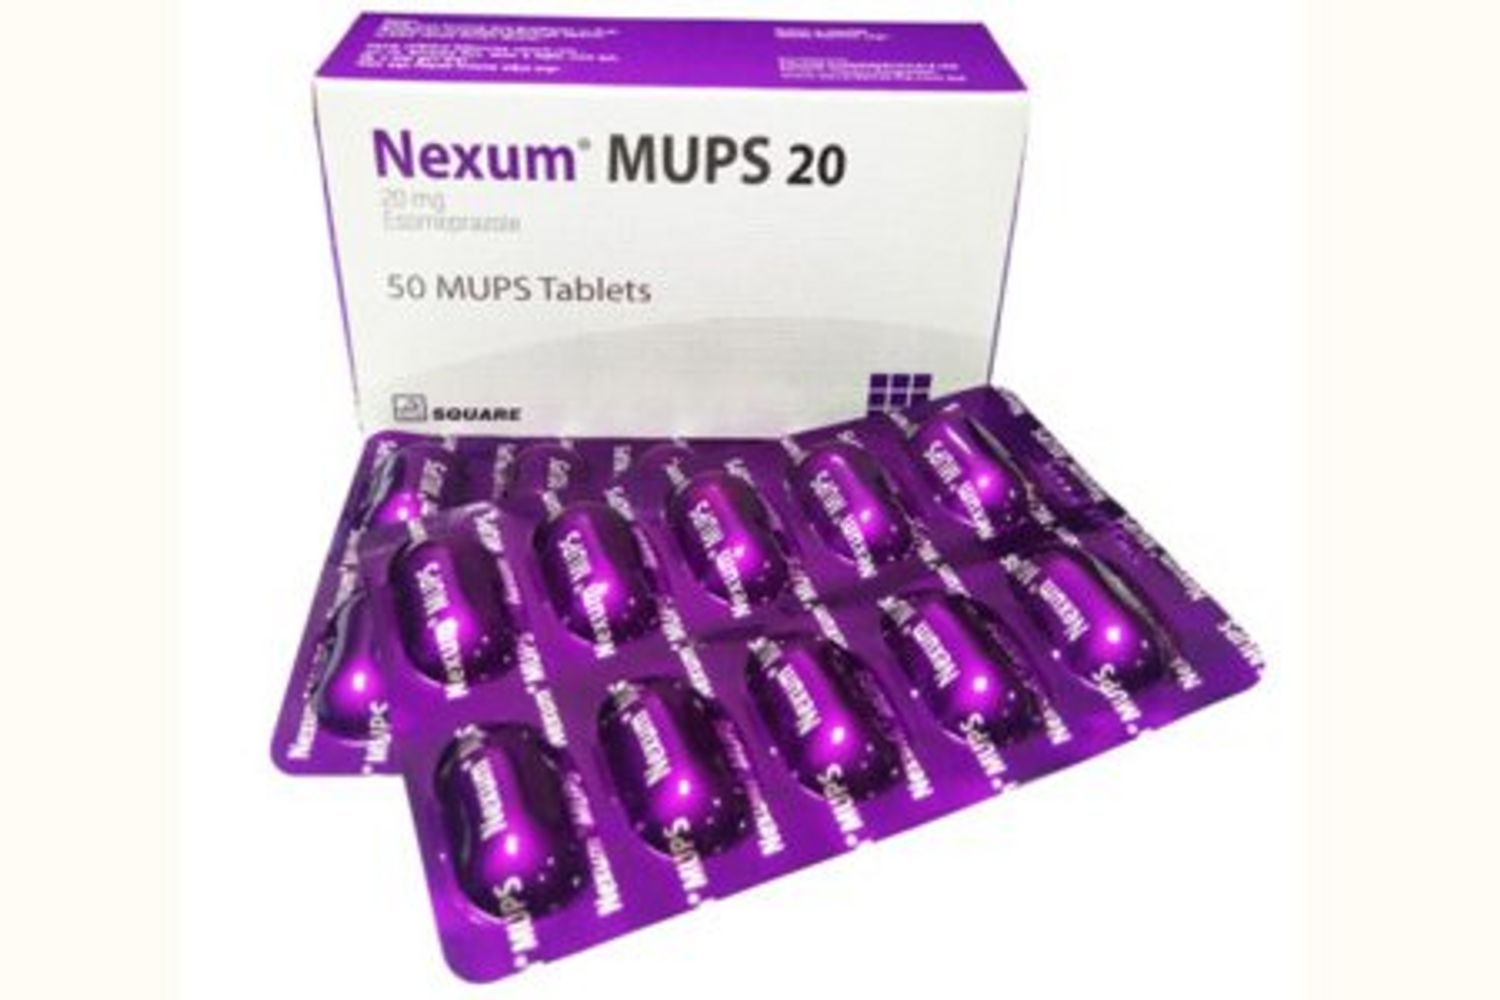 Nexum MUPS 20